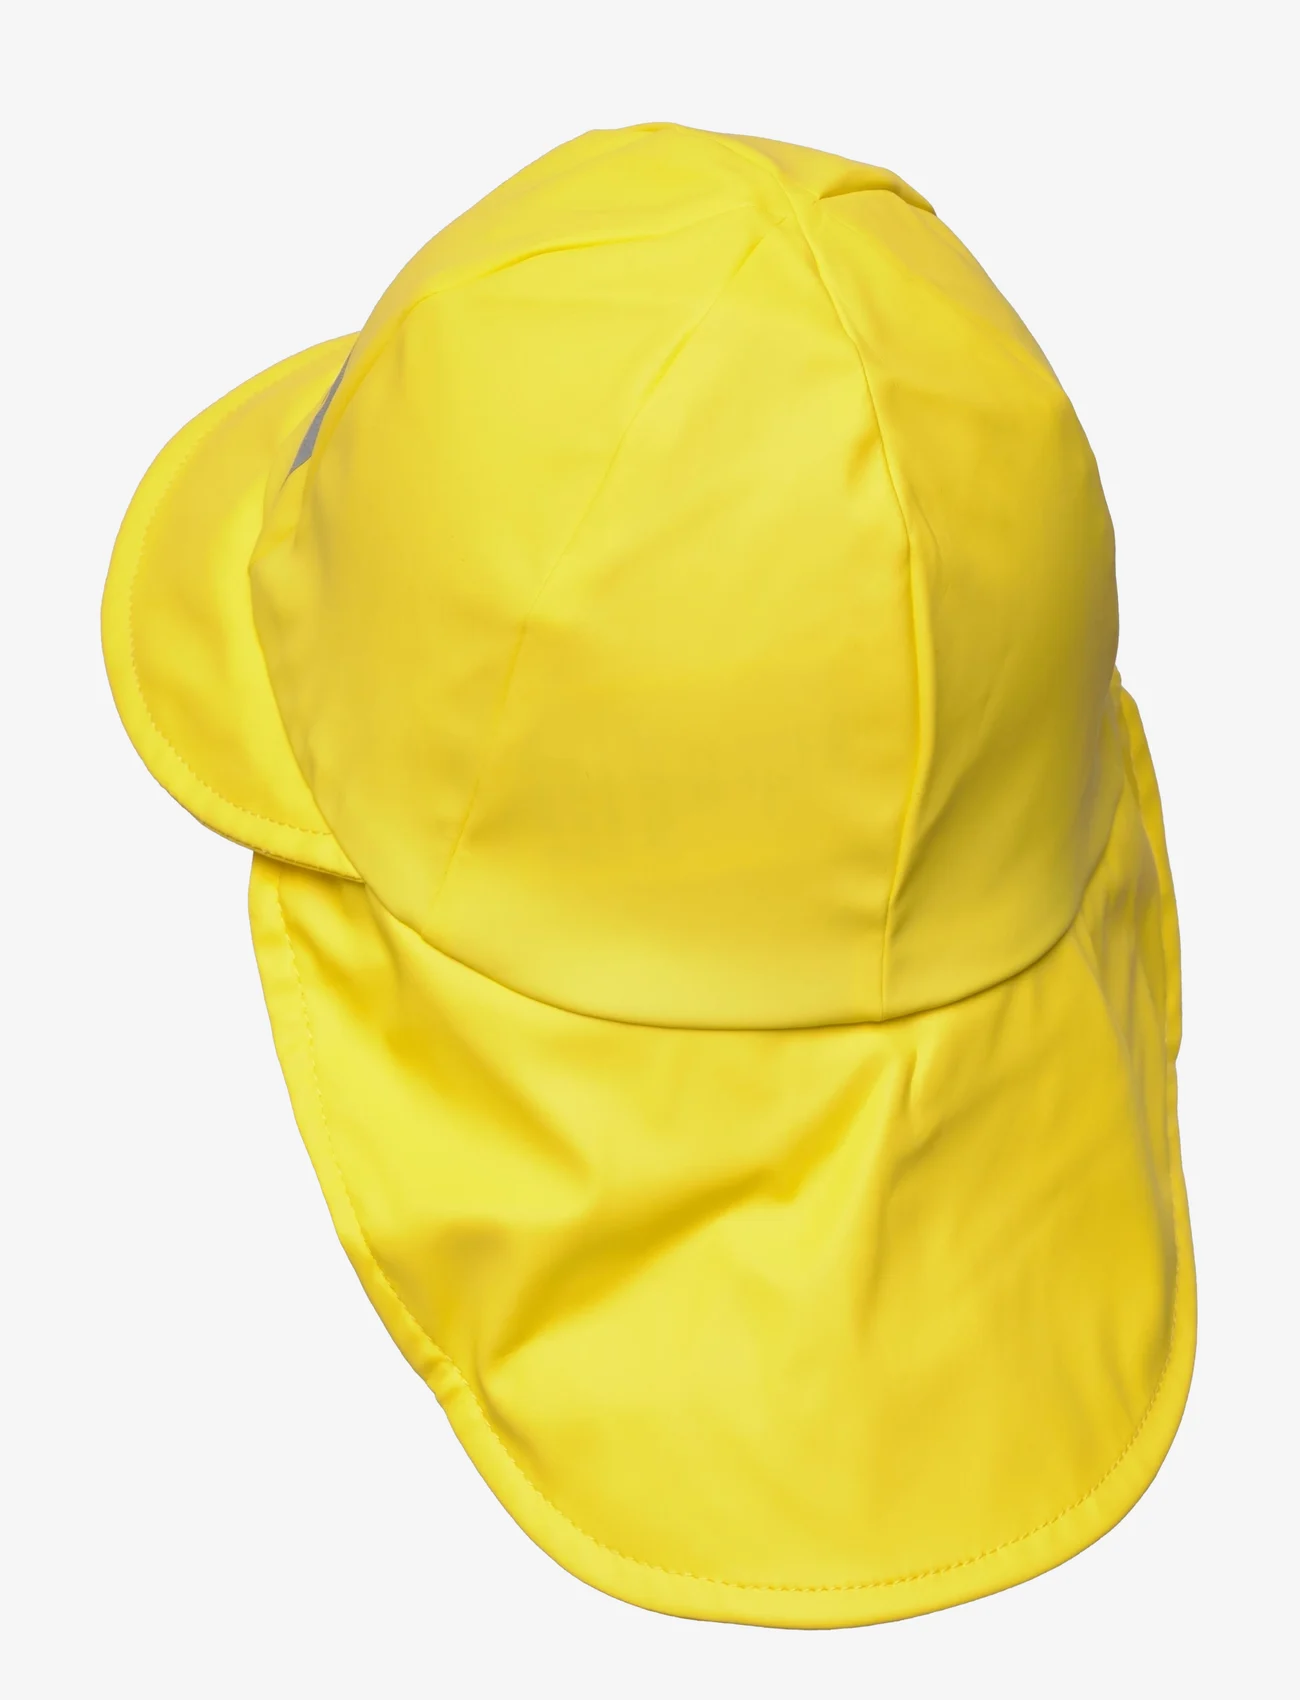 Reima - Rain hat, Rainy - lowest prices - yellow - 1